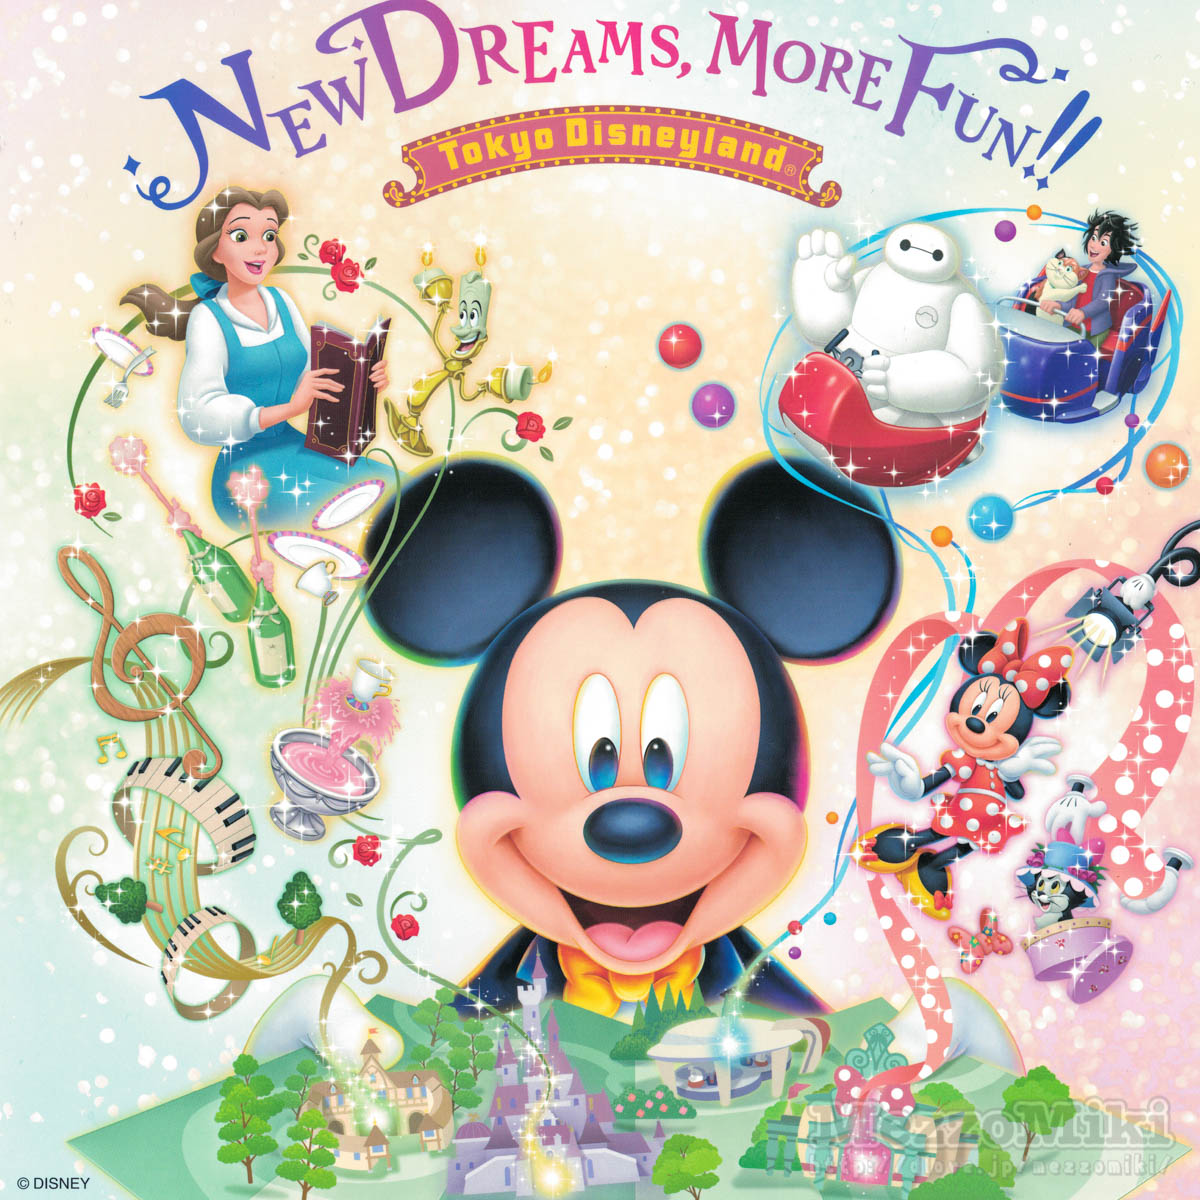 東京ディズニーランド“New Dreams, More Fun!!”スナップフォト台紙